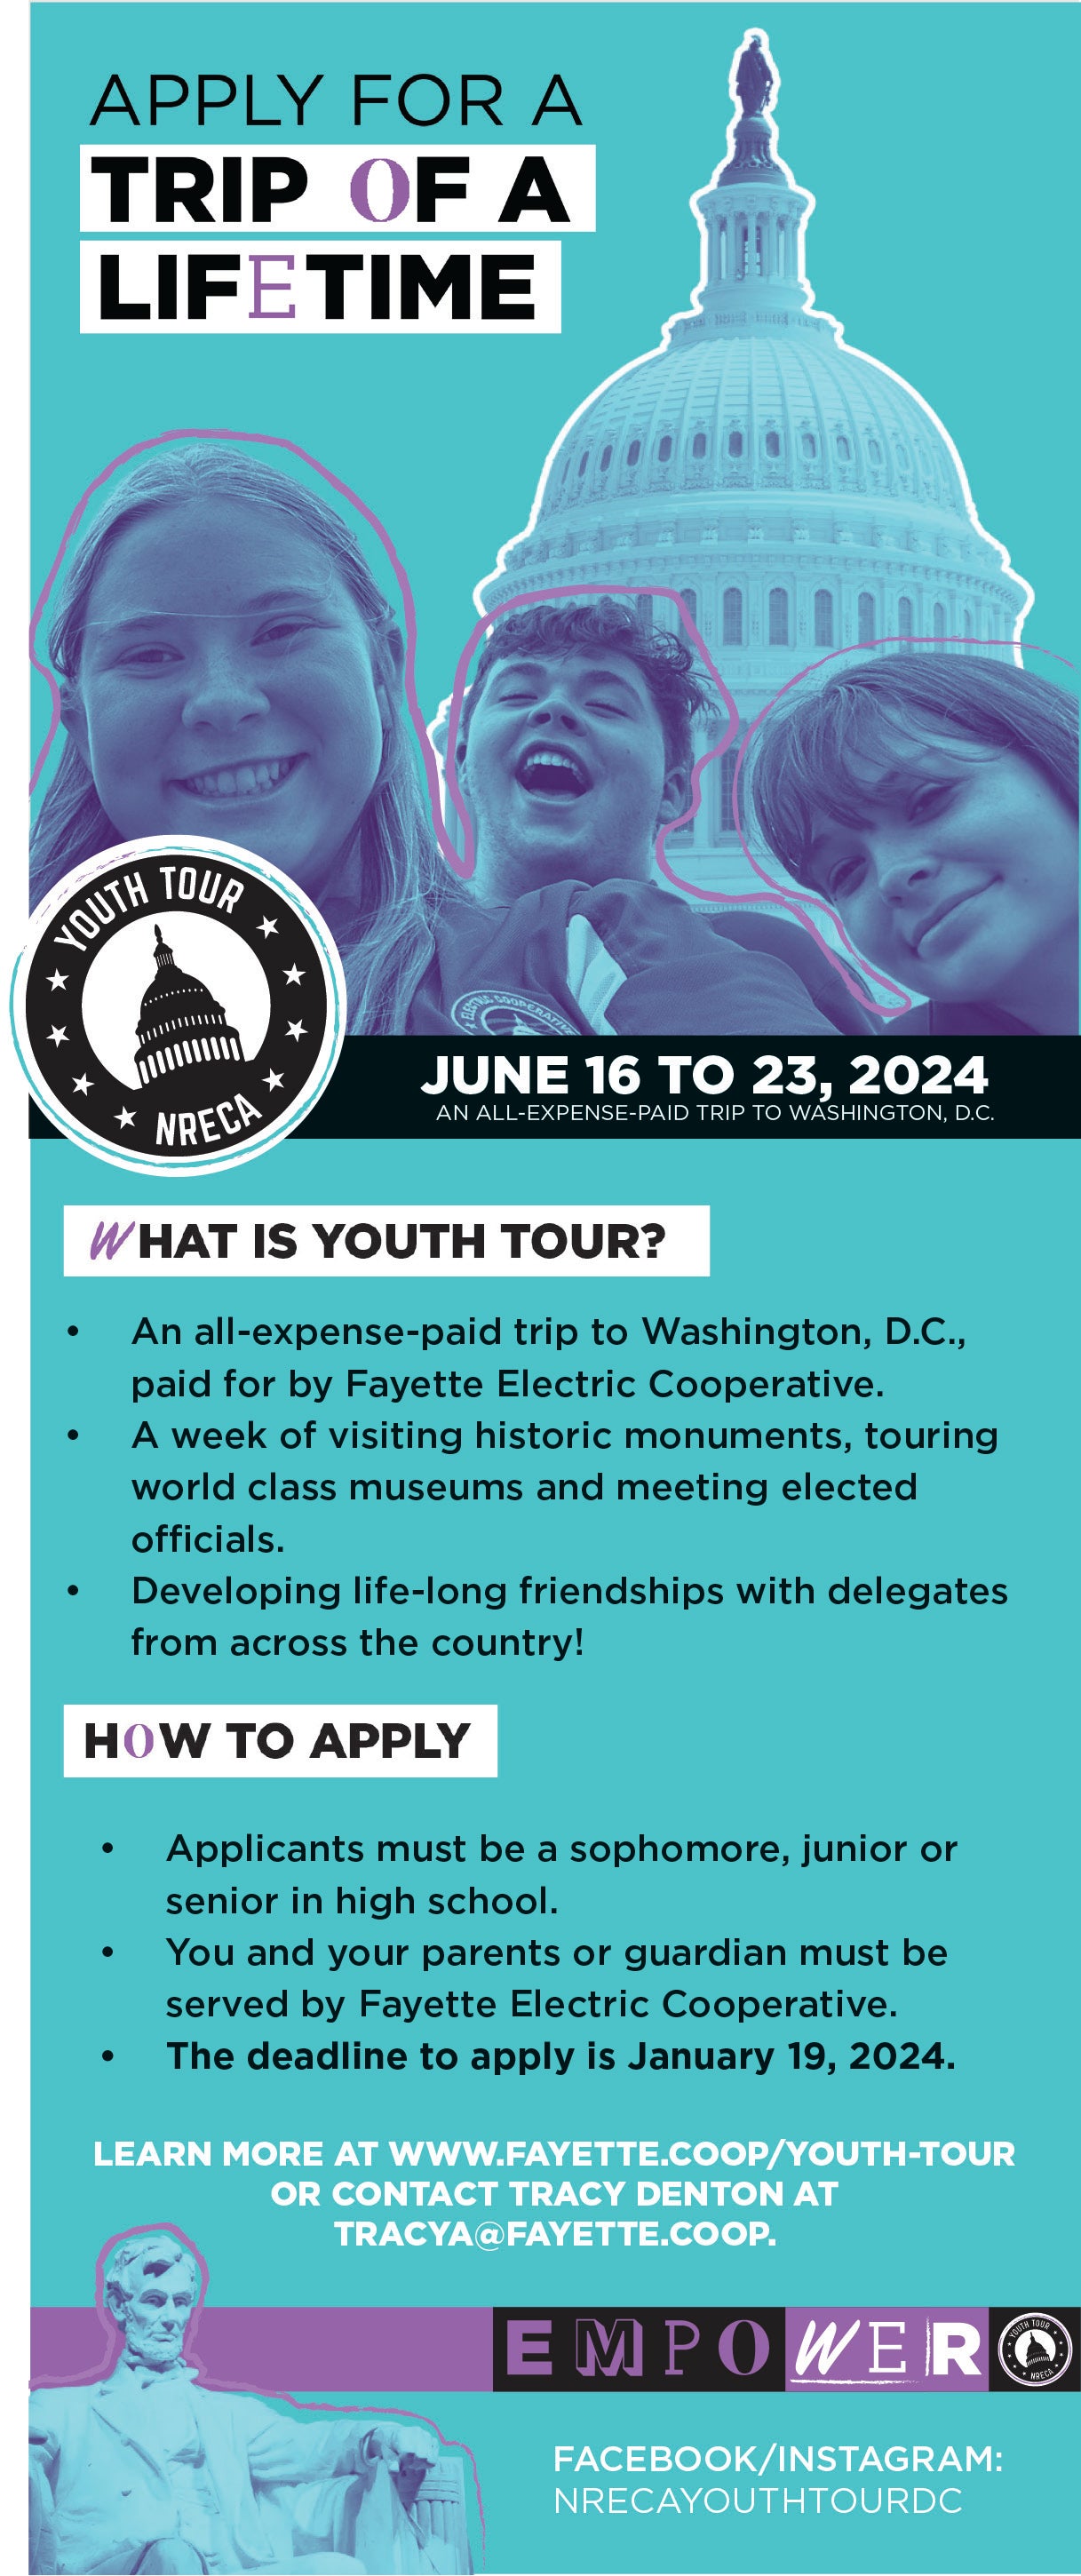 2024 Youth Tour to Washington